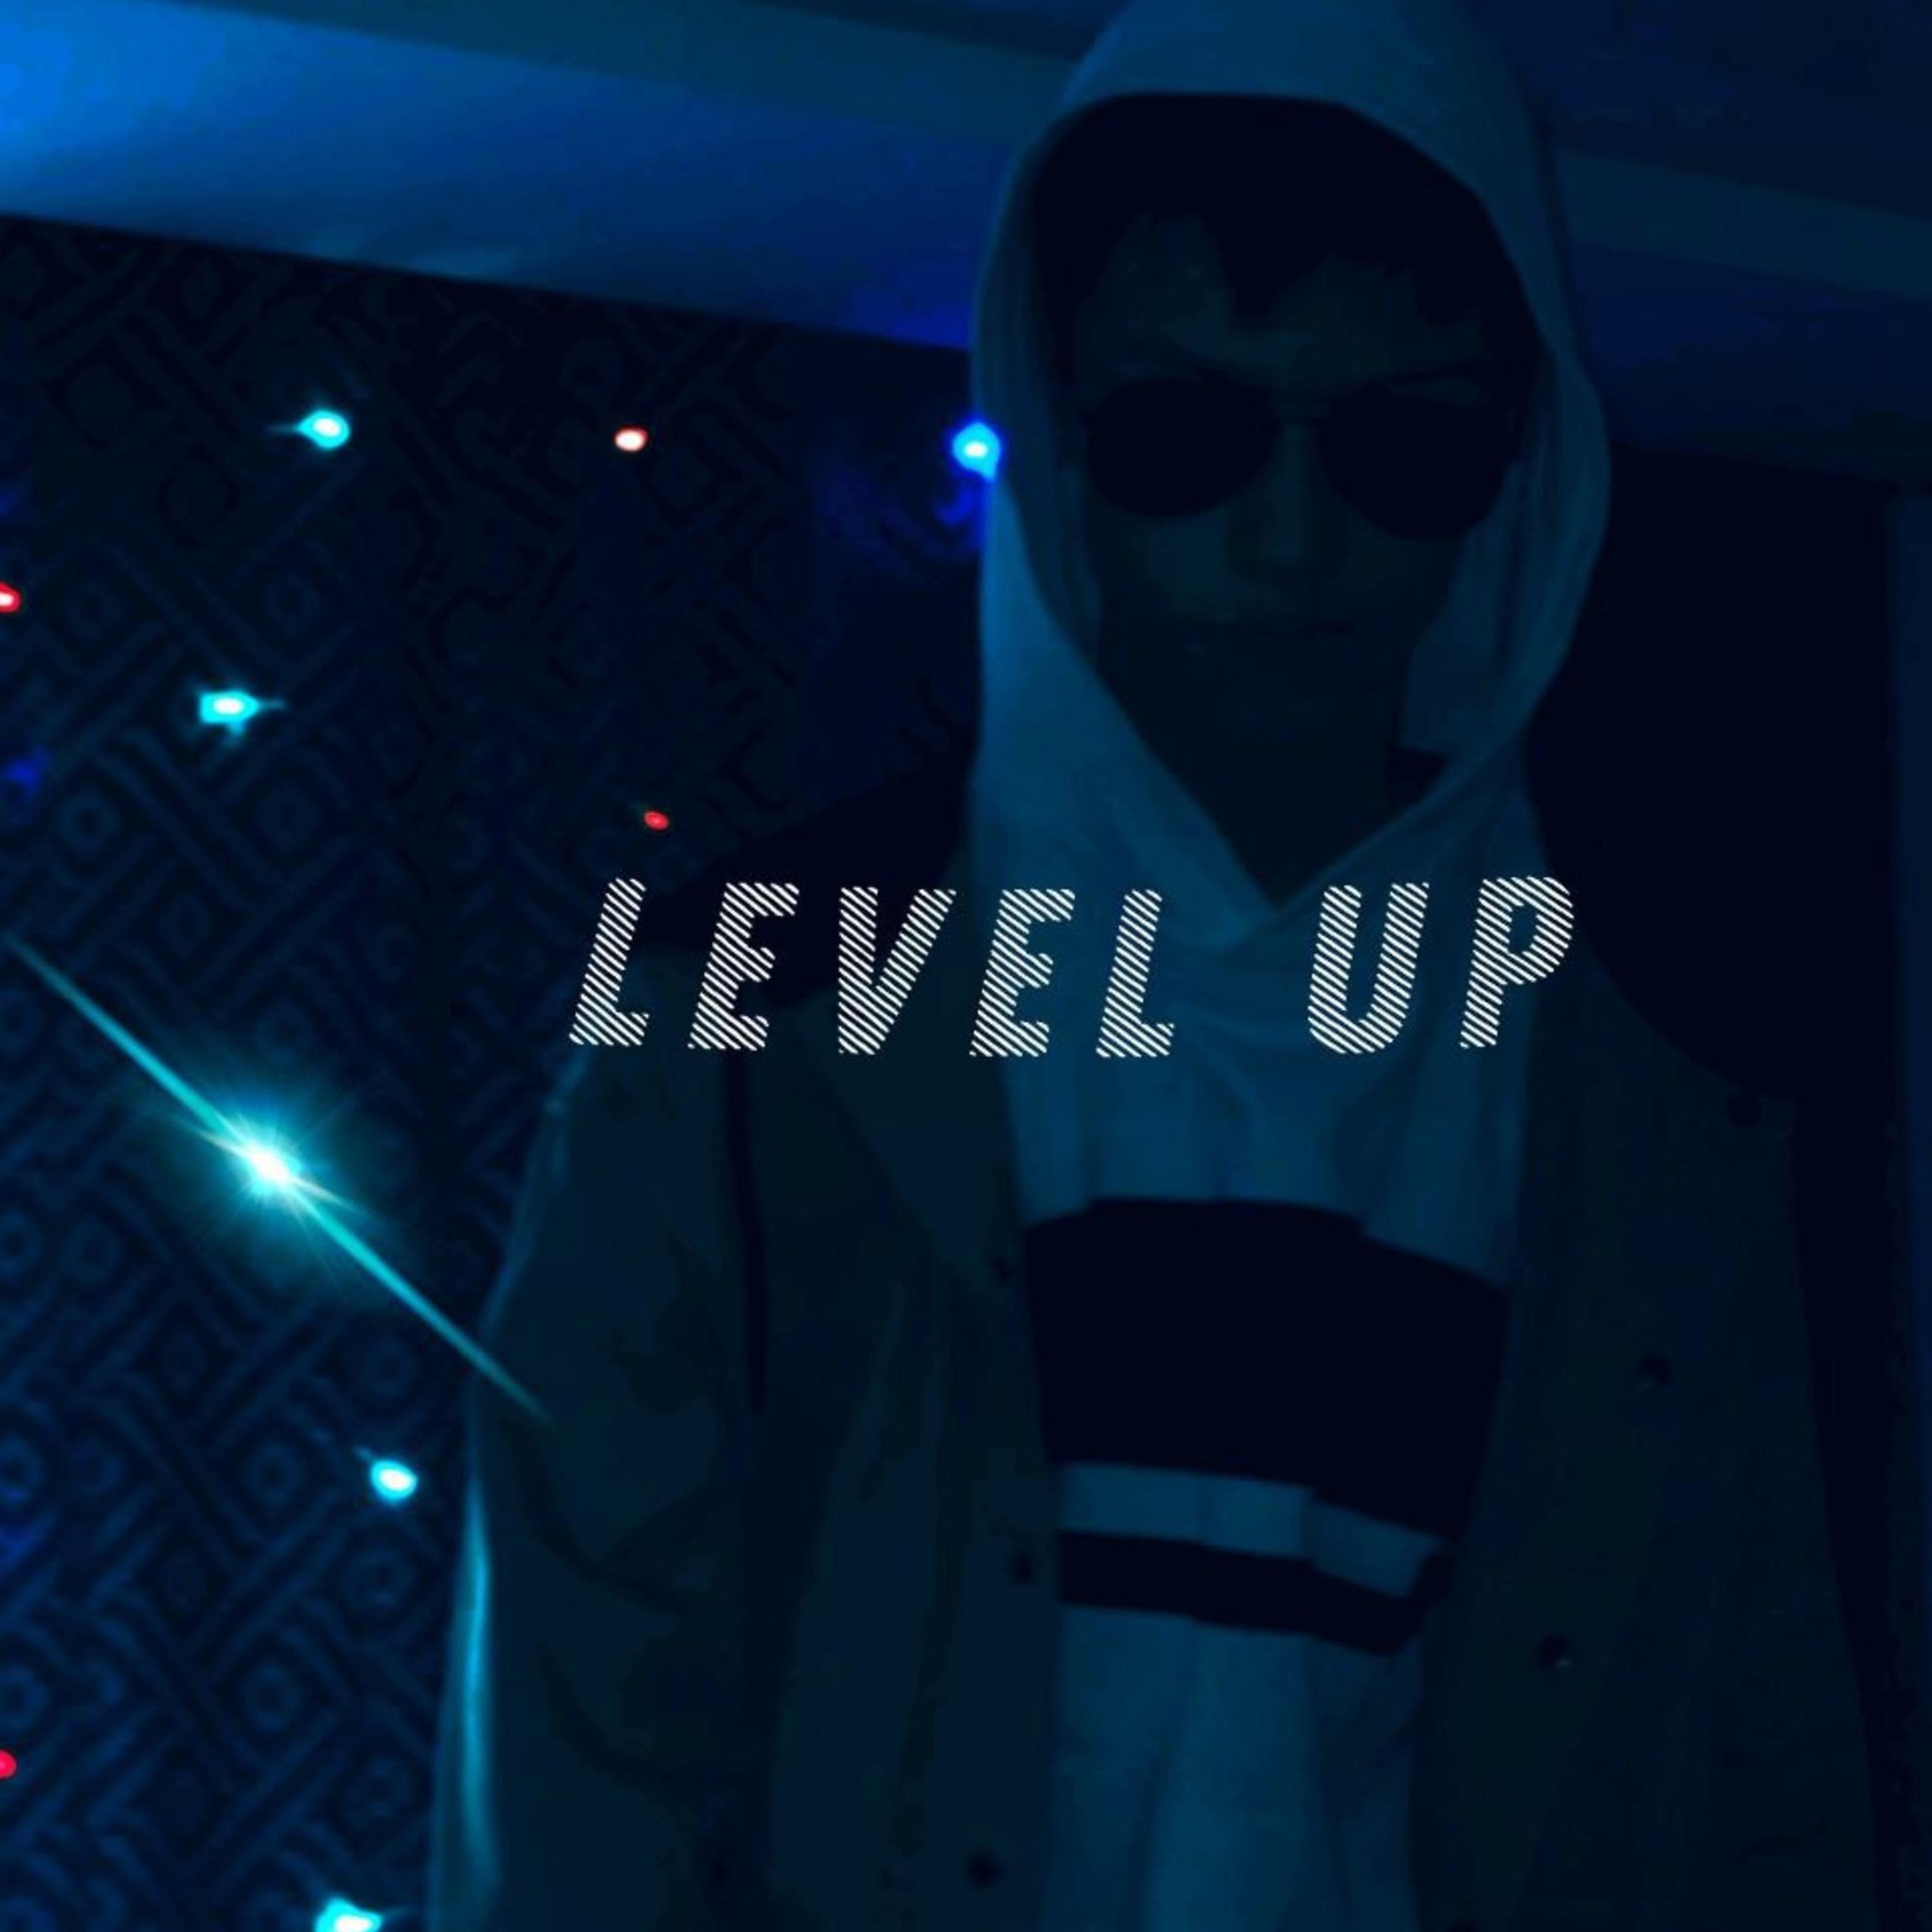 Постер альбома Level Up